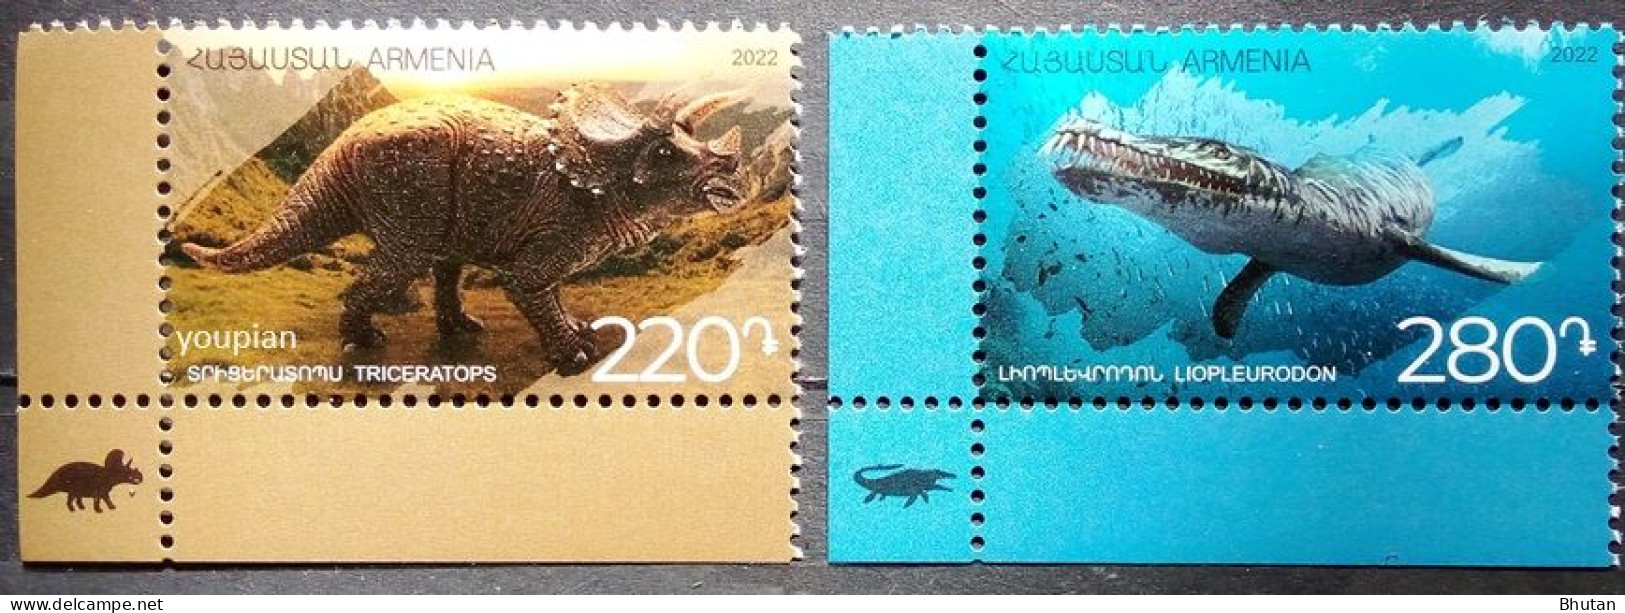 Armenia 2022, Dinosaurus - Liopleurodon And Triceratops, MNH Stamps Set - Armenia